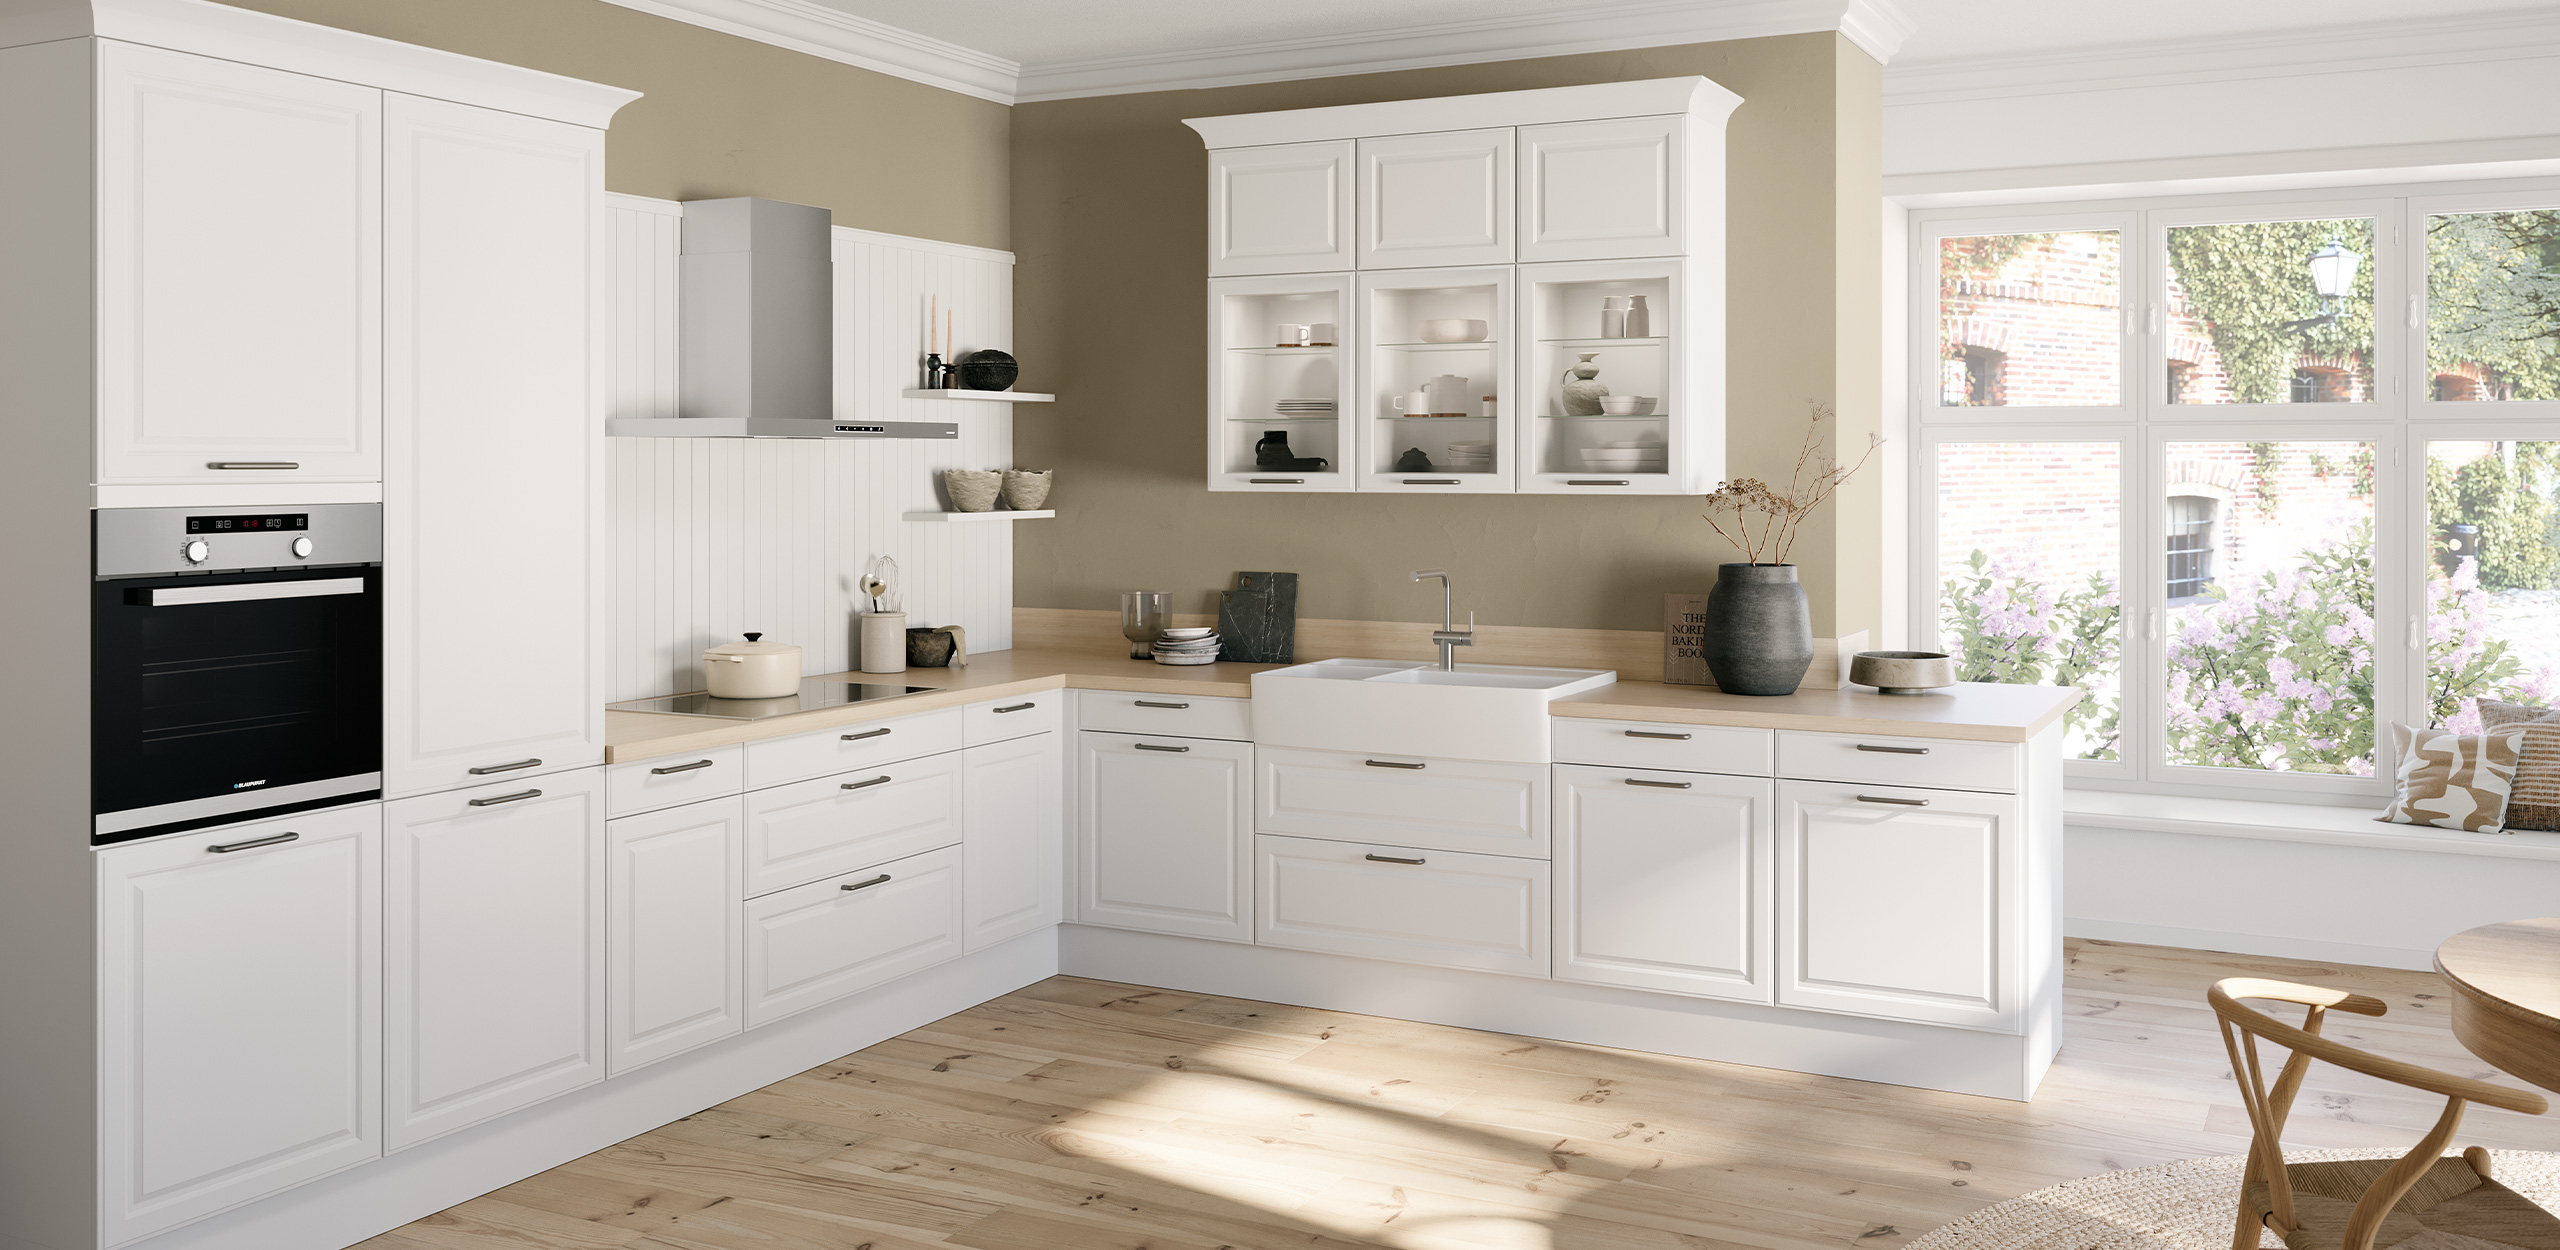 Imagen del conjunto de la cocina concept130 TOSKANA Crystal White con mueble de cocina en forma de L y zona de comedor truncada.